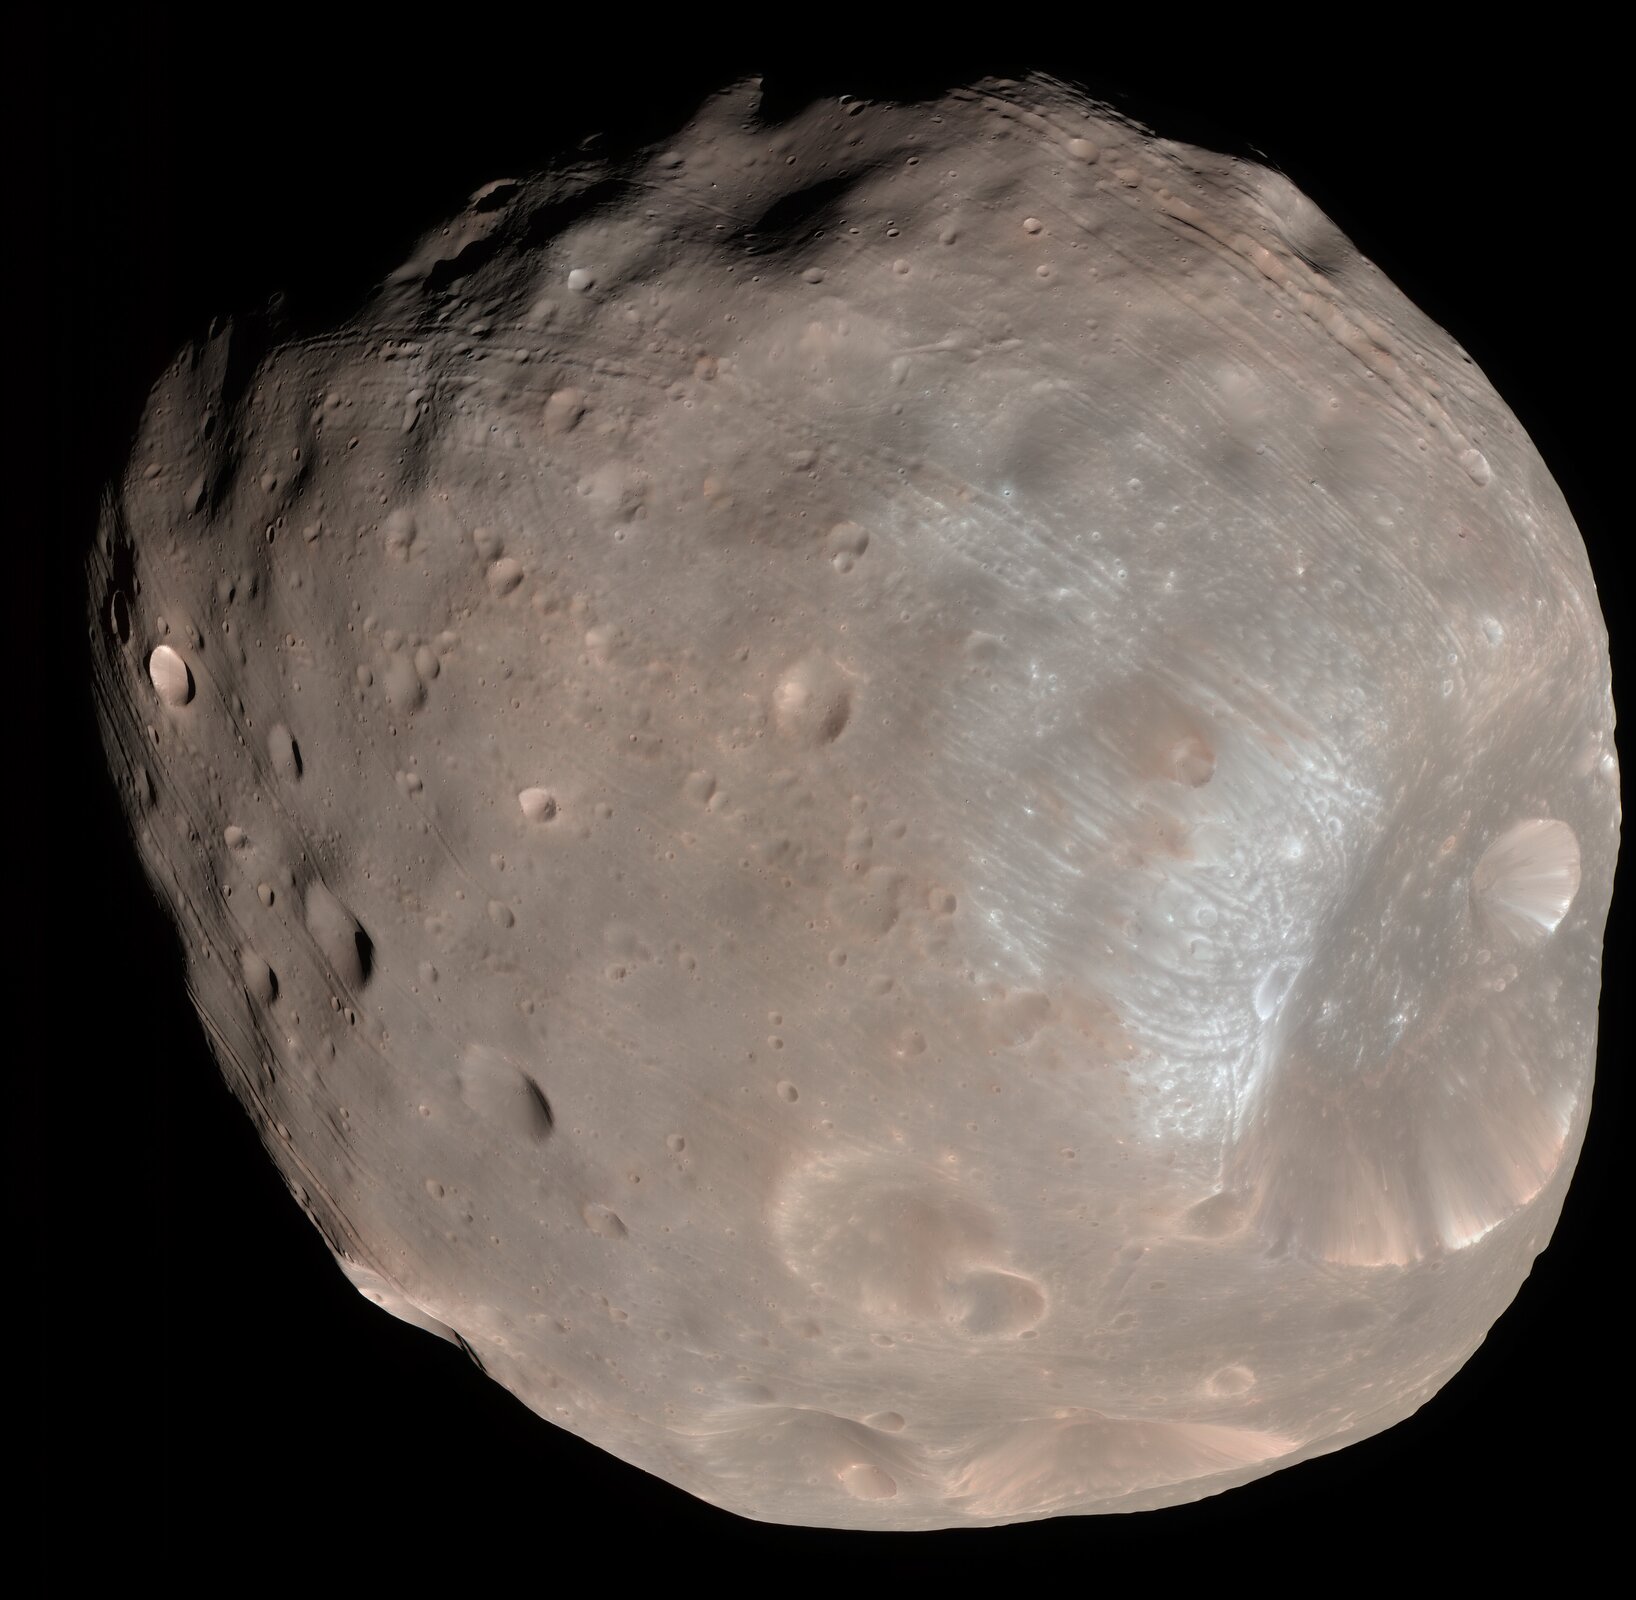 Zdjęcie przedstawia jeden z dwóch księżyców Marsa – Fobos. Kształt księżyca zbliżony do kuli, powierzchnia nieregularna. Widoczne małe, okrągłe zagłębienia – kratery. Kolor szarobrązowy.